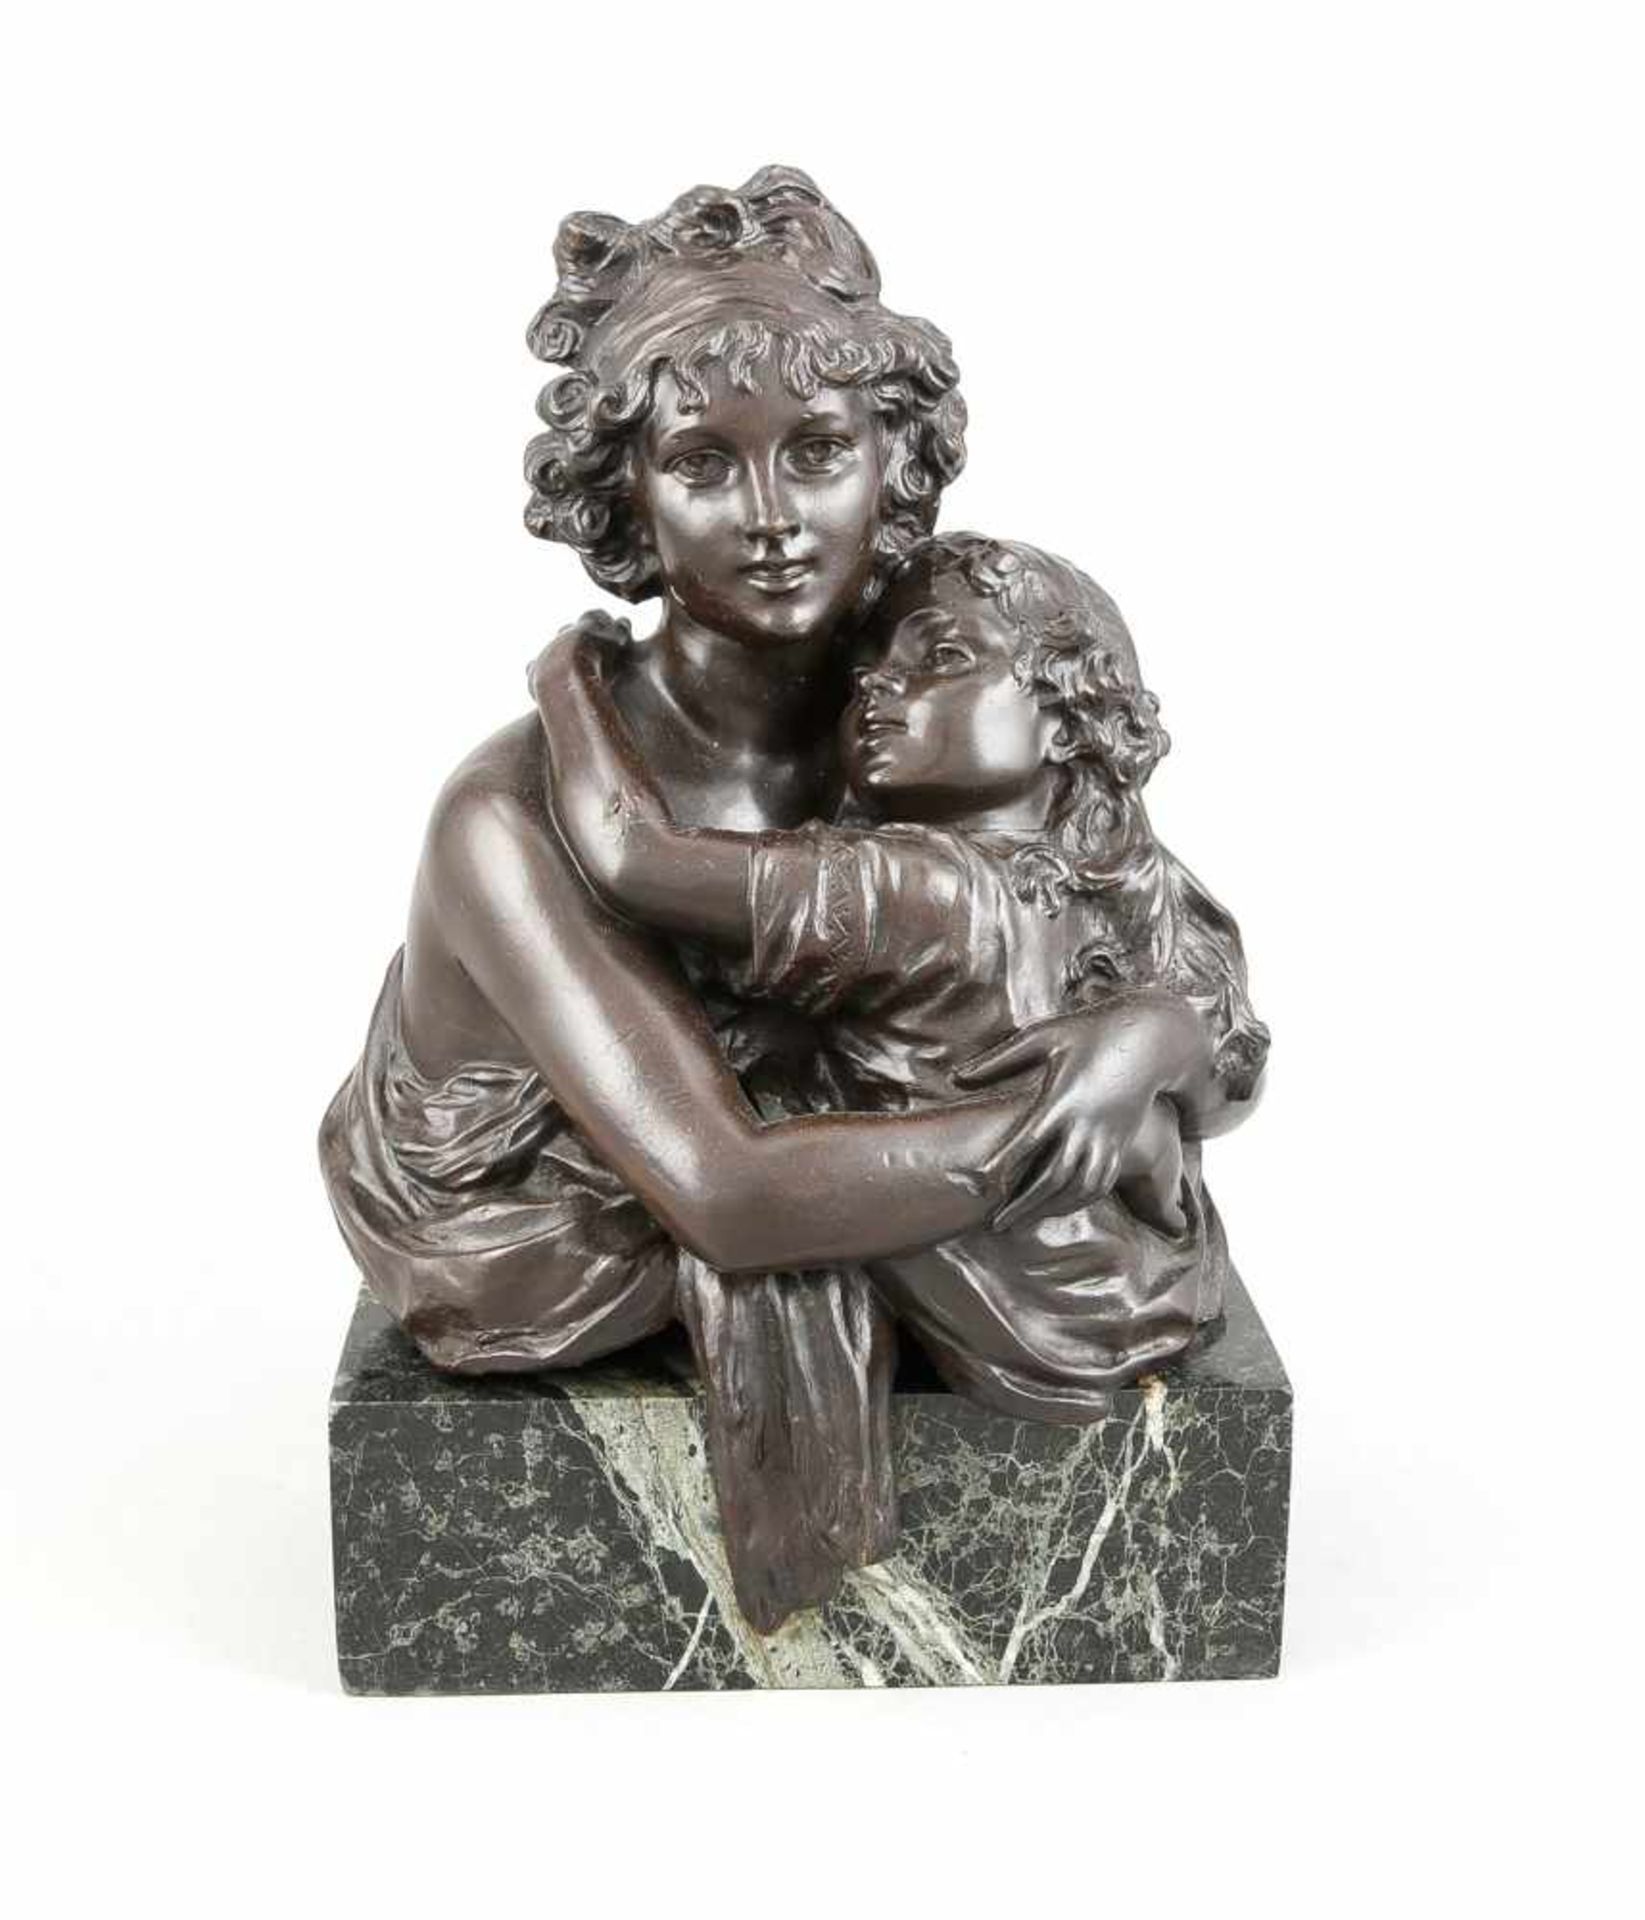 M. Charny, Bildhauer des 19. Jh., Elisabeth Vigée-Lebrun mit Tochter, große Bronzeplastiknach dem